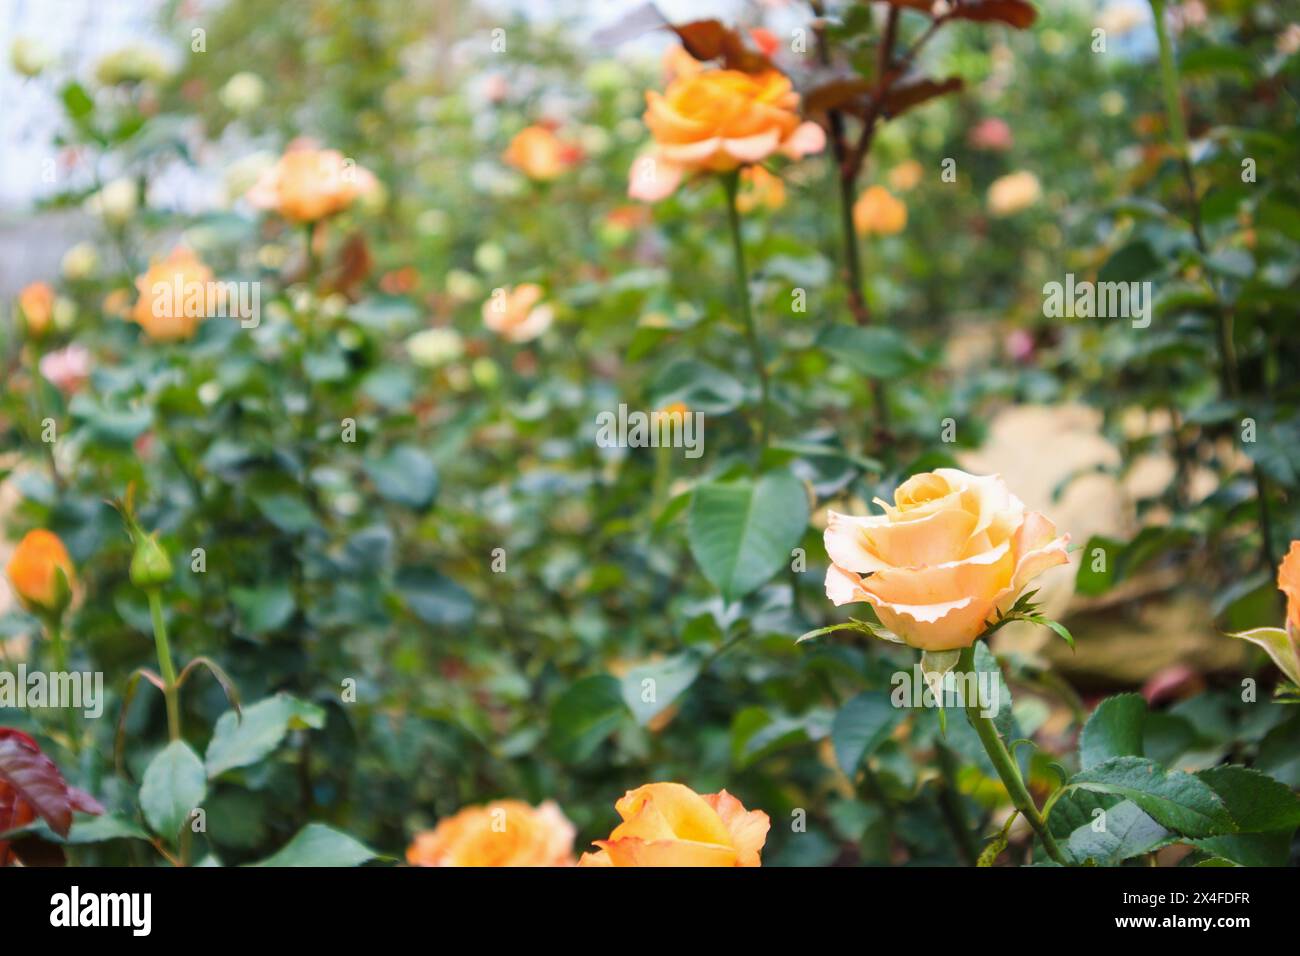 Bellissime rose naturali fresche nel giardino fiorito Foto Stock